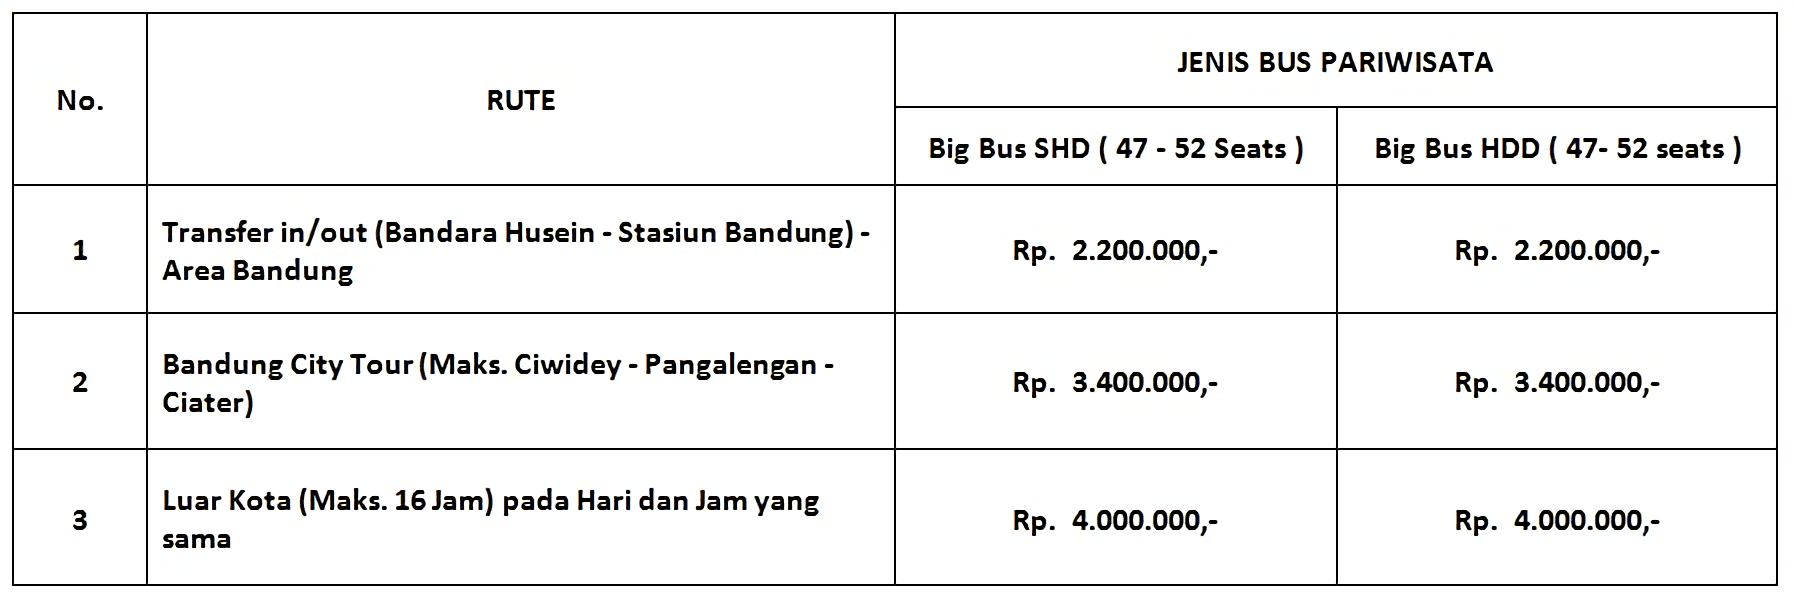 Harga Sewa Bus SHD dan HDD Bus di Bandung Untuk 47-52 Seat